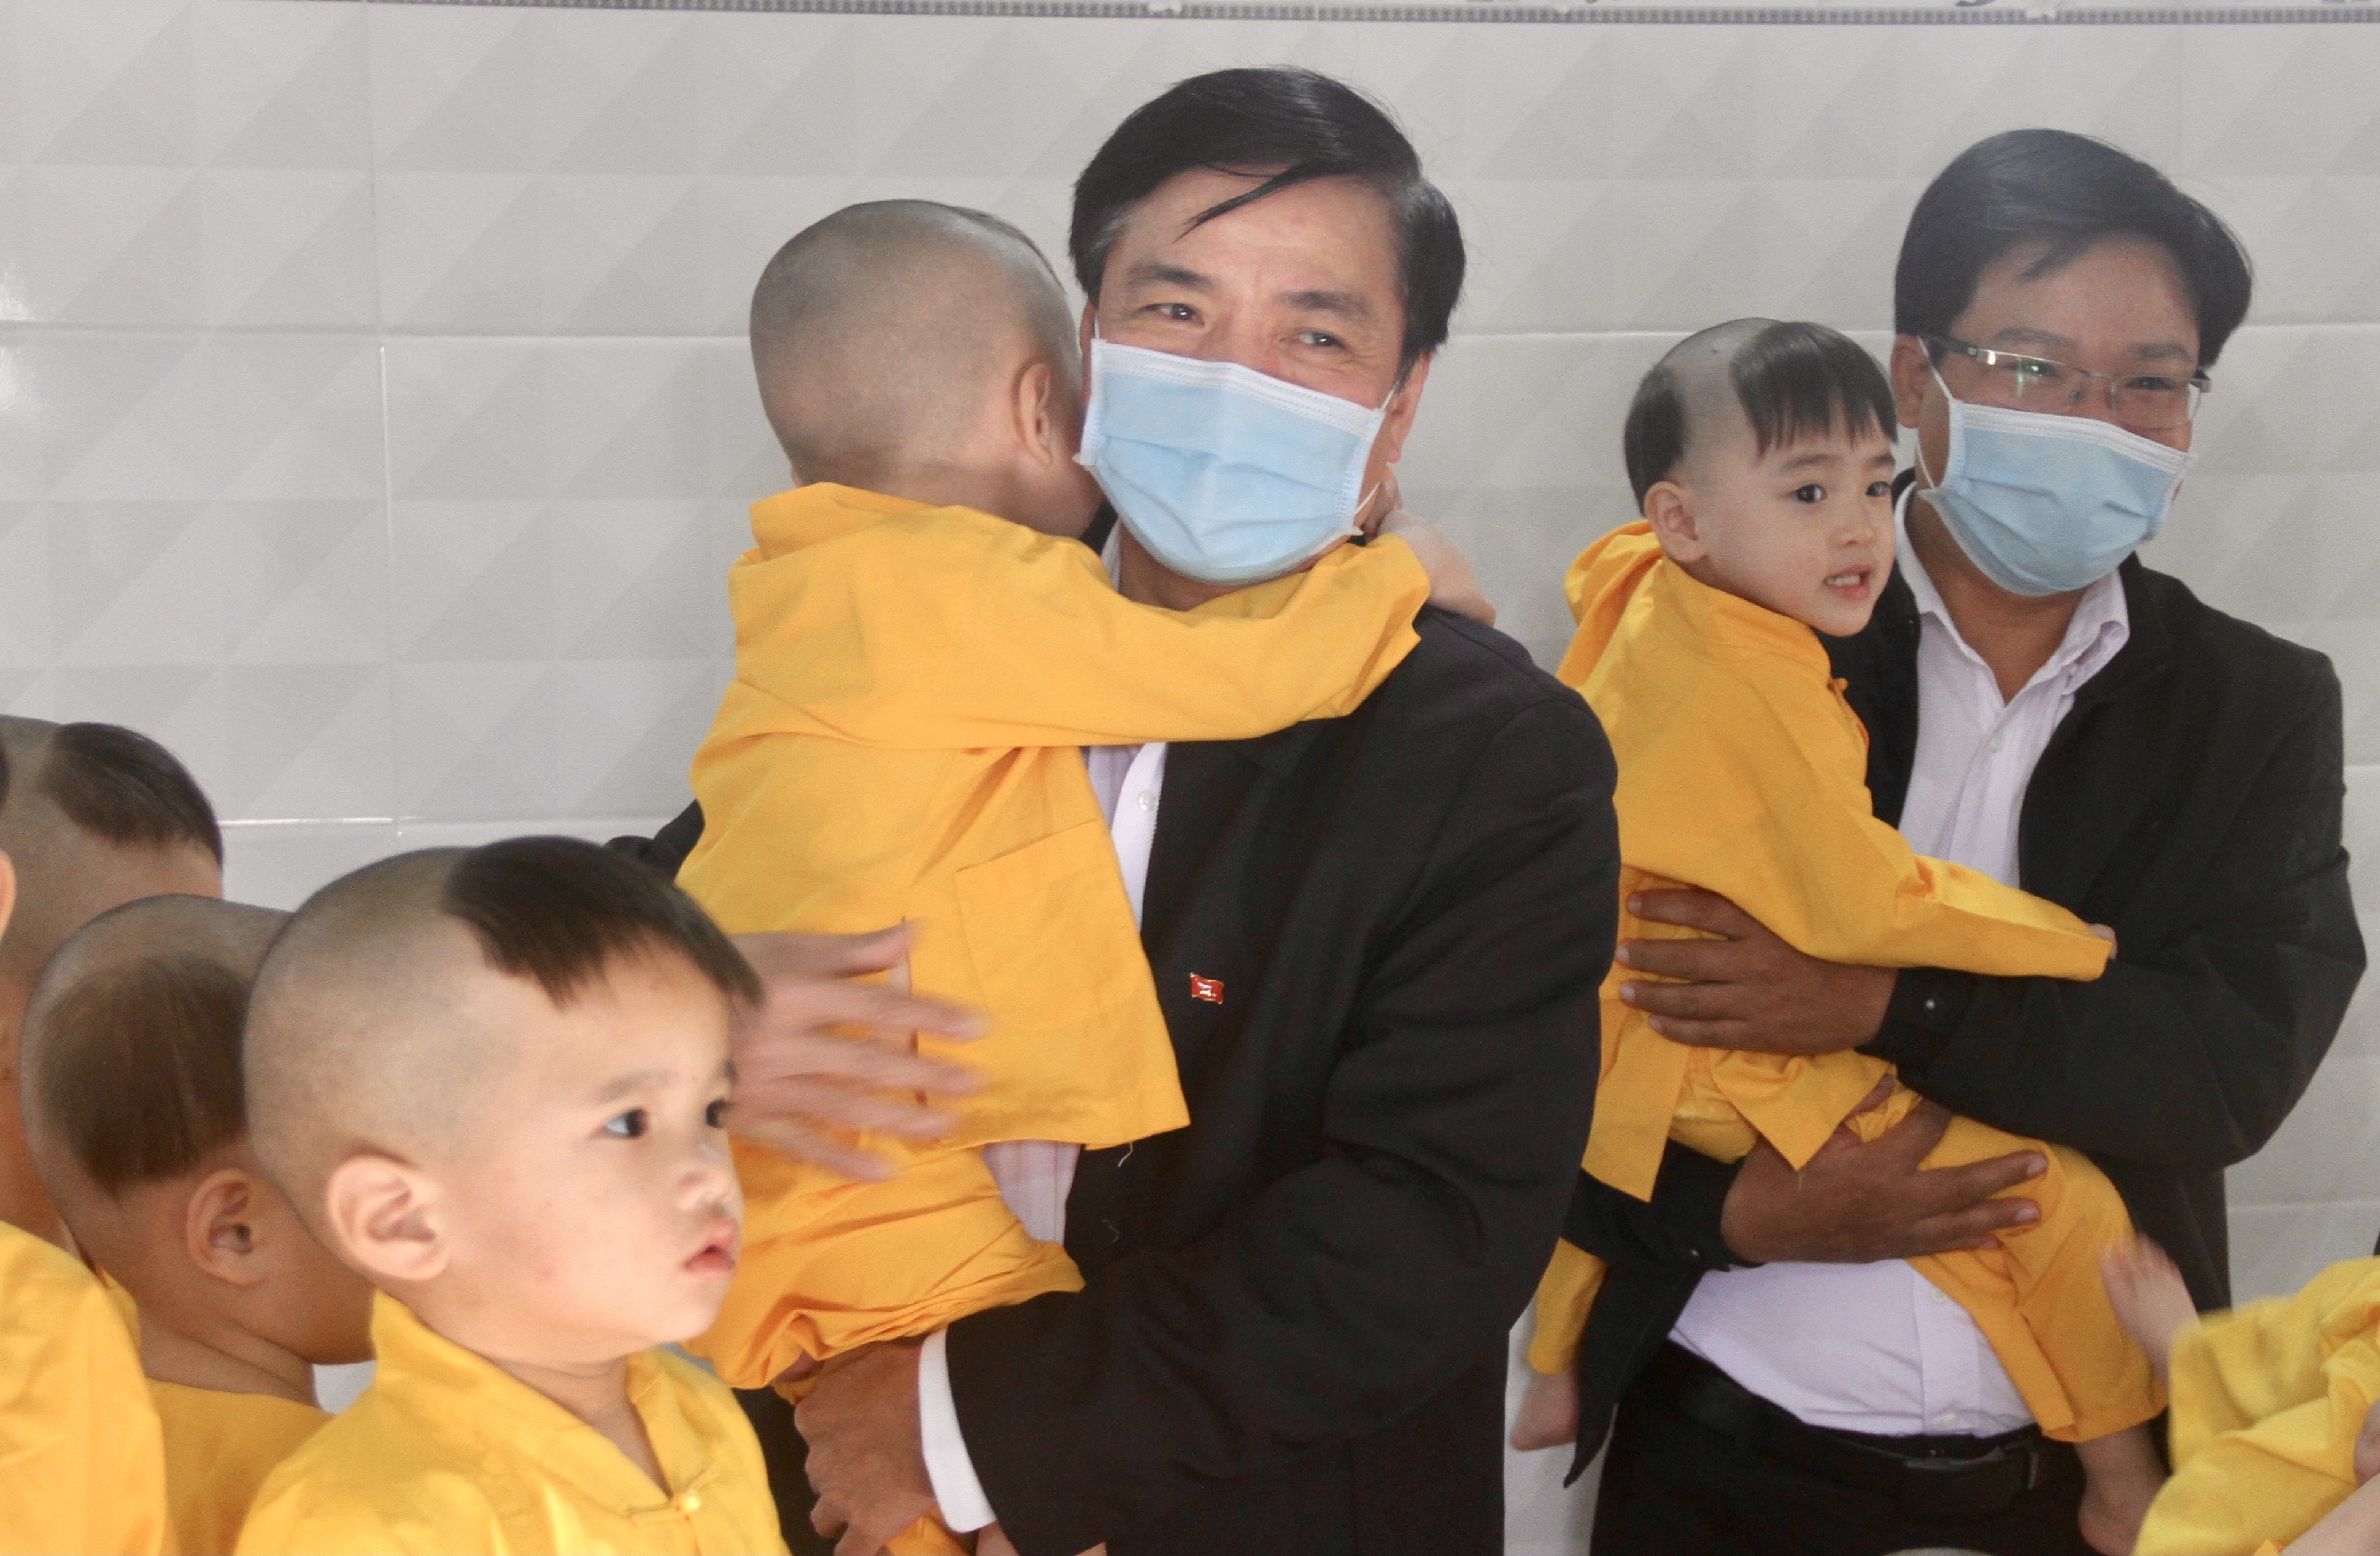 Bí thư Tỉnh ủy Đăk Lăk Bùi Văn Cường thăm hỏi, tặng quà cho trẻ em mồ côi tại Trung tâm Bảo trợ xã hội cơ sở 2 chùa Bửu Thắng